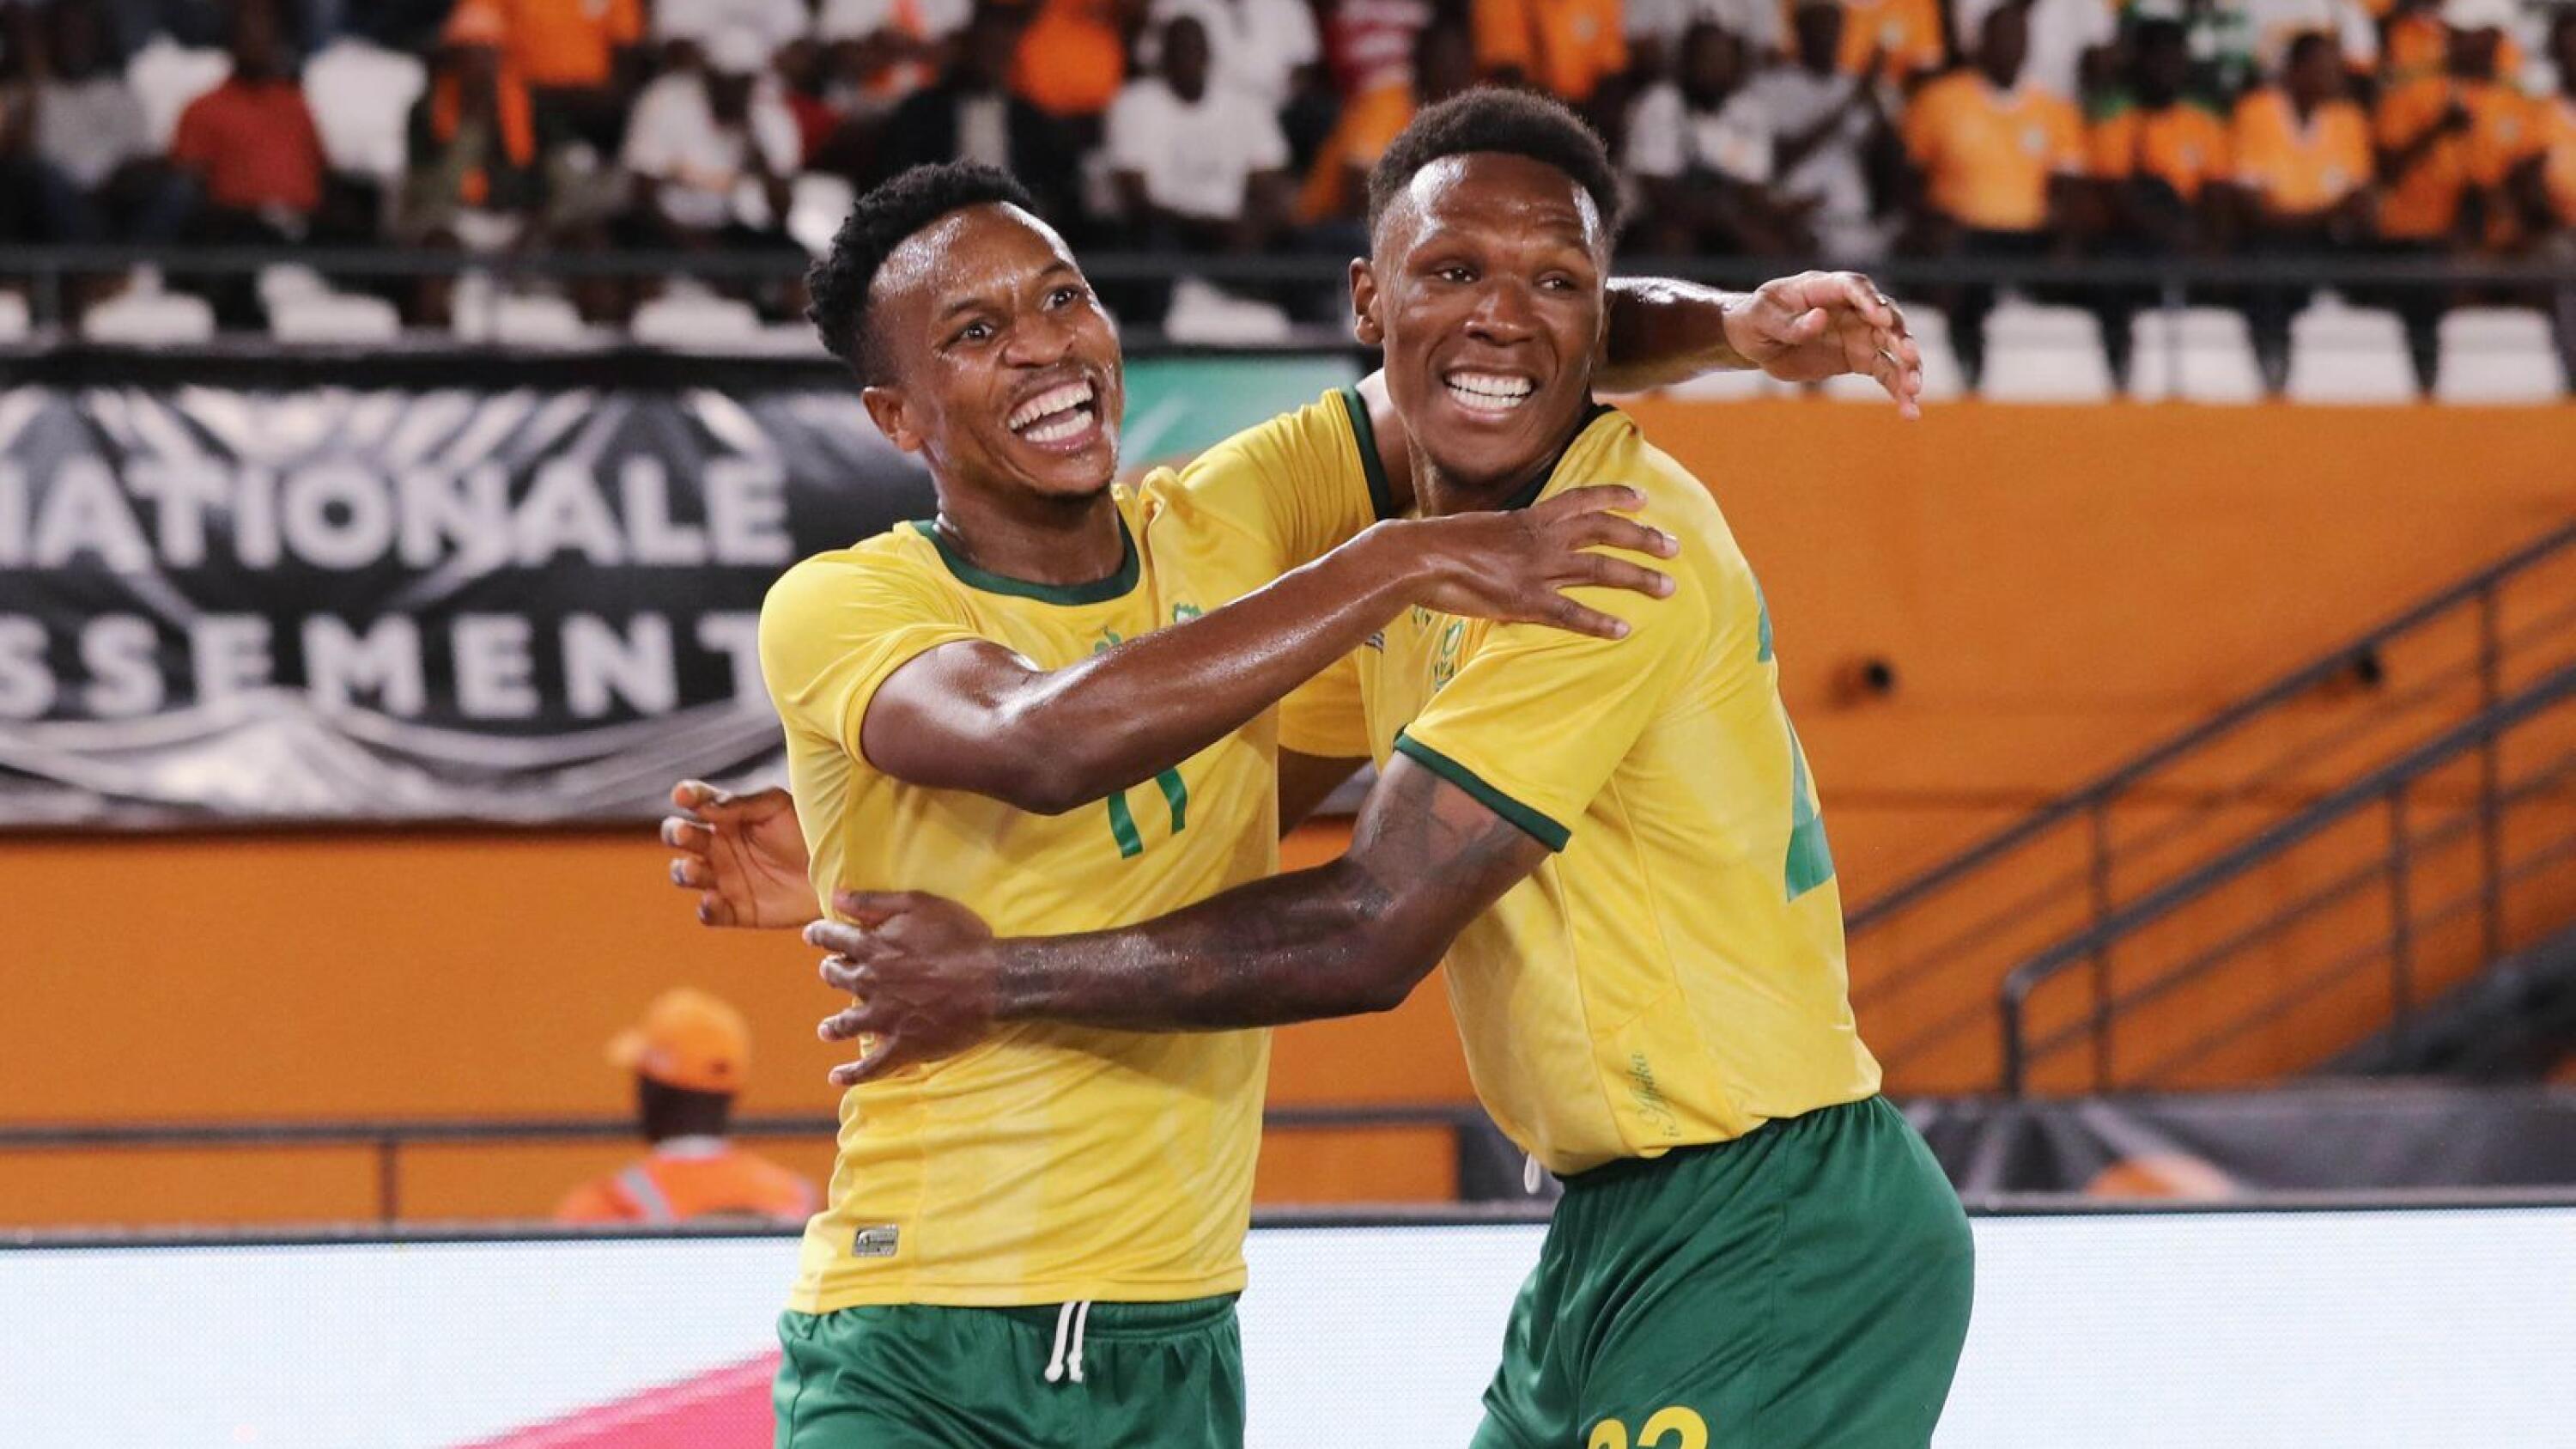 Themba Zwane of South Africa (l) celebrates goal with Lebo Mothiba